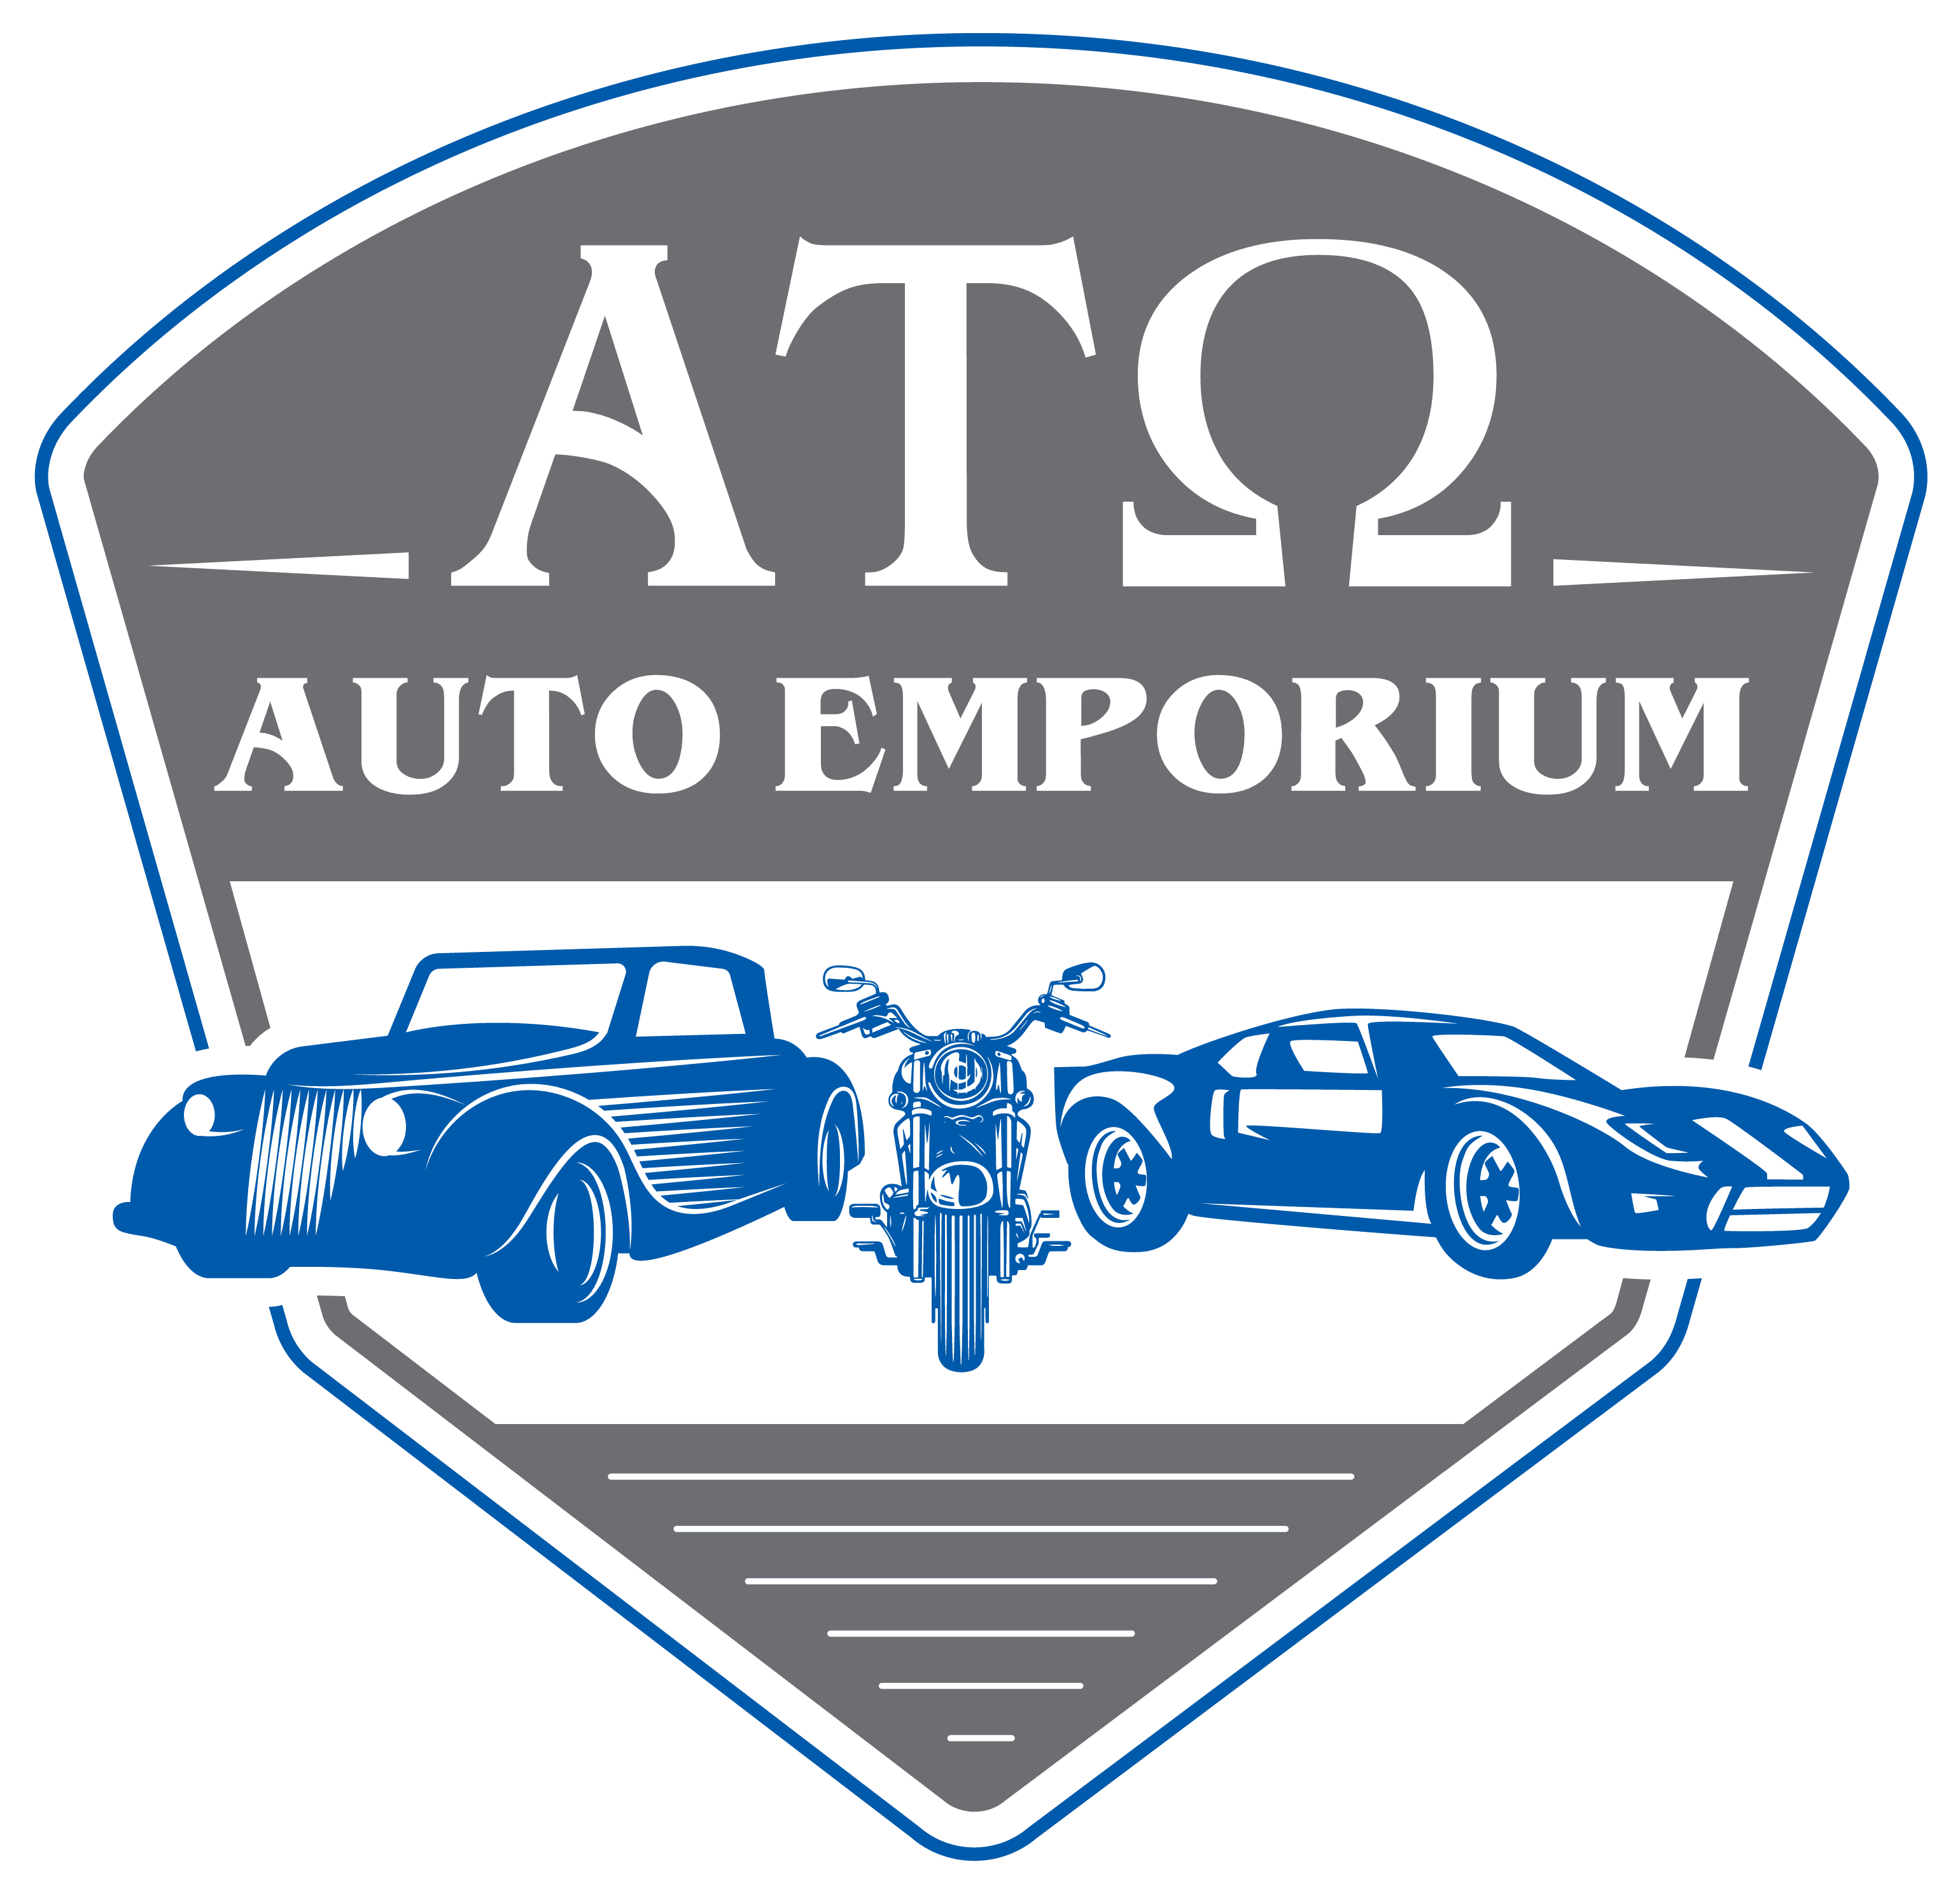 ATO Auto Emporium